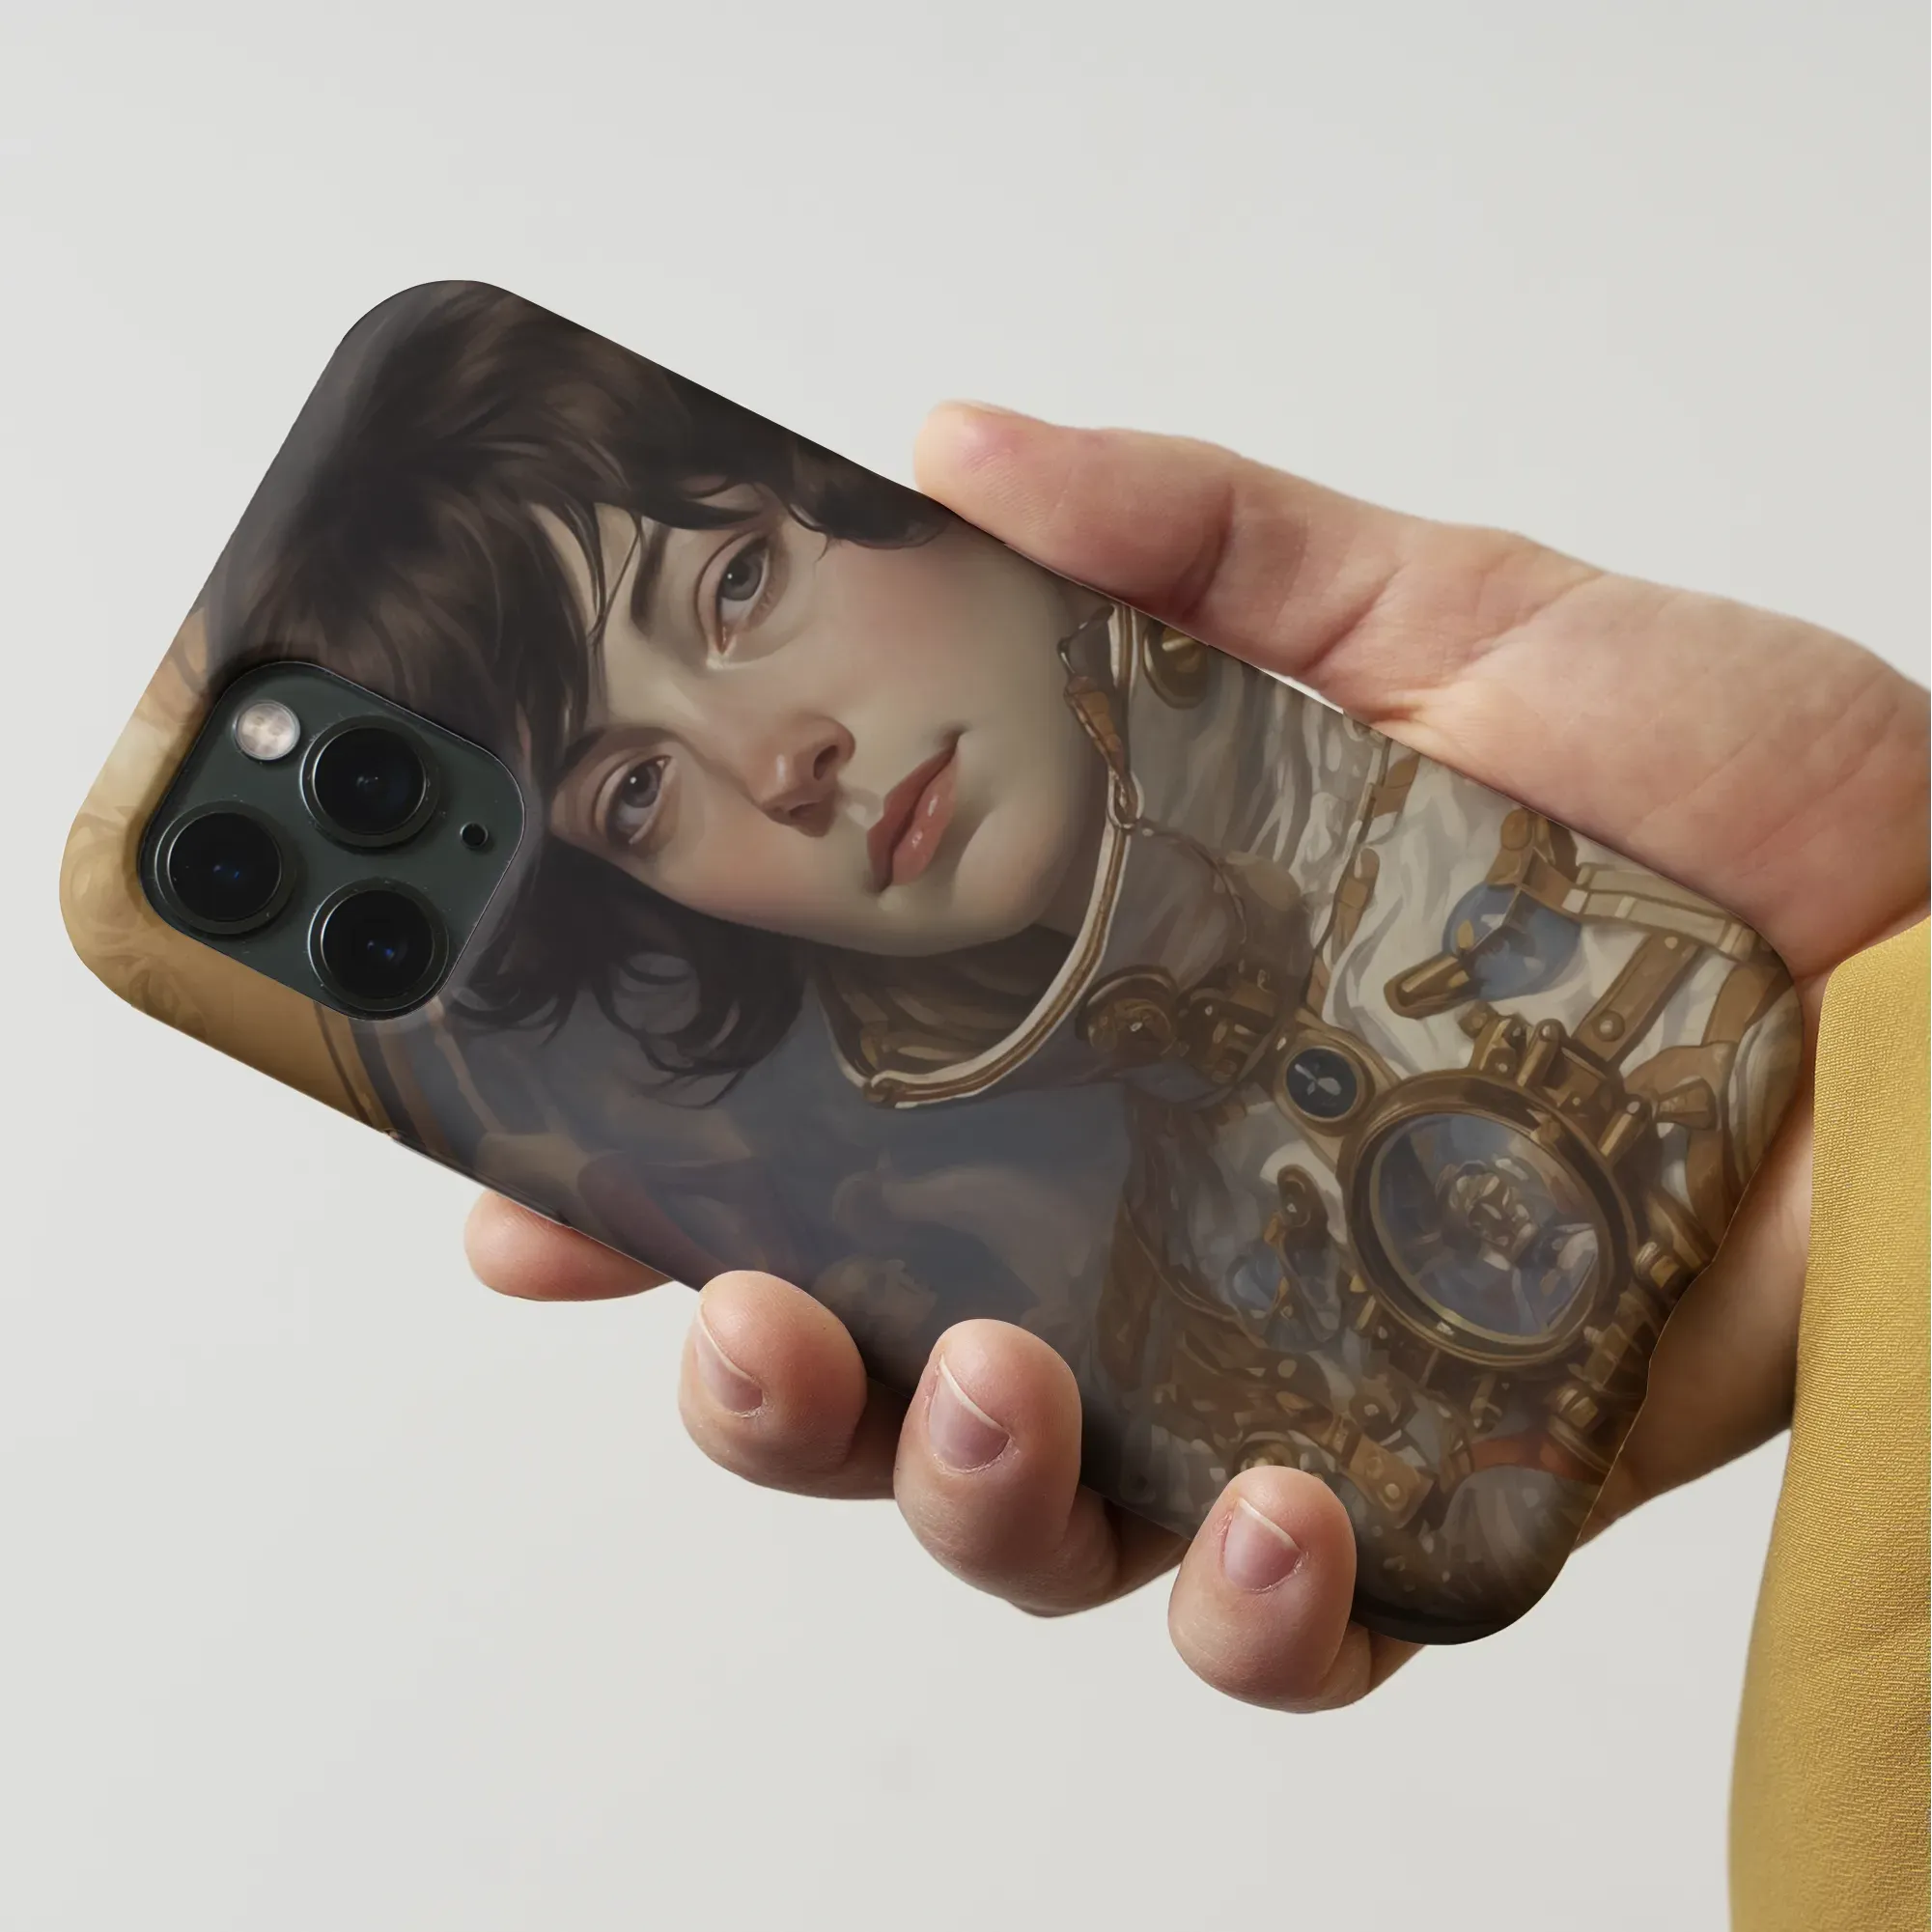 Chloé The Lesbian Astronaut - Space Aesthetic Art Phone Case - Mobile Phone Cases - Aesthetic Art